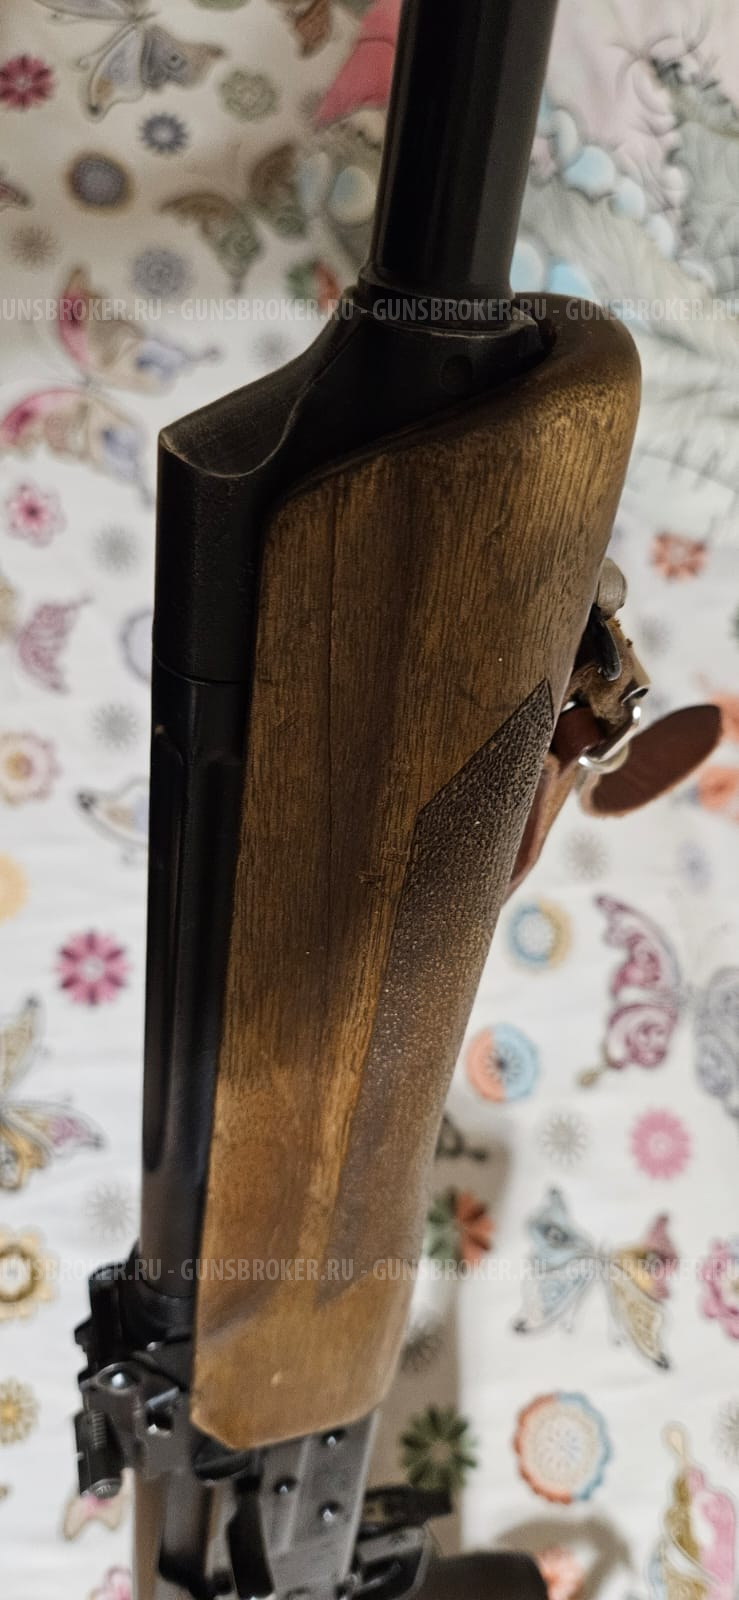 Охотничье огнестрельное оружие с нарезным стволом марки Вепрь-308, калибр 7,62х51 мм, №АА 2105